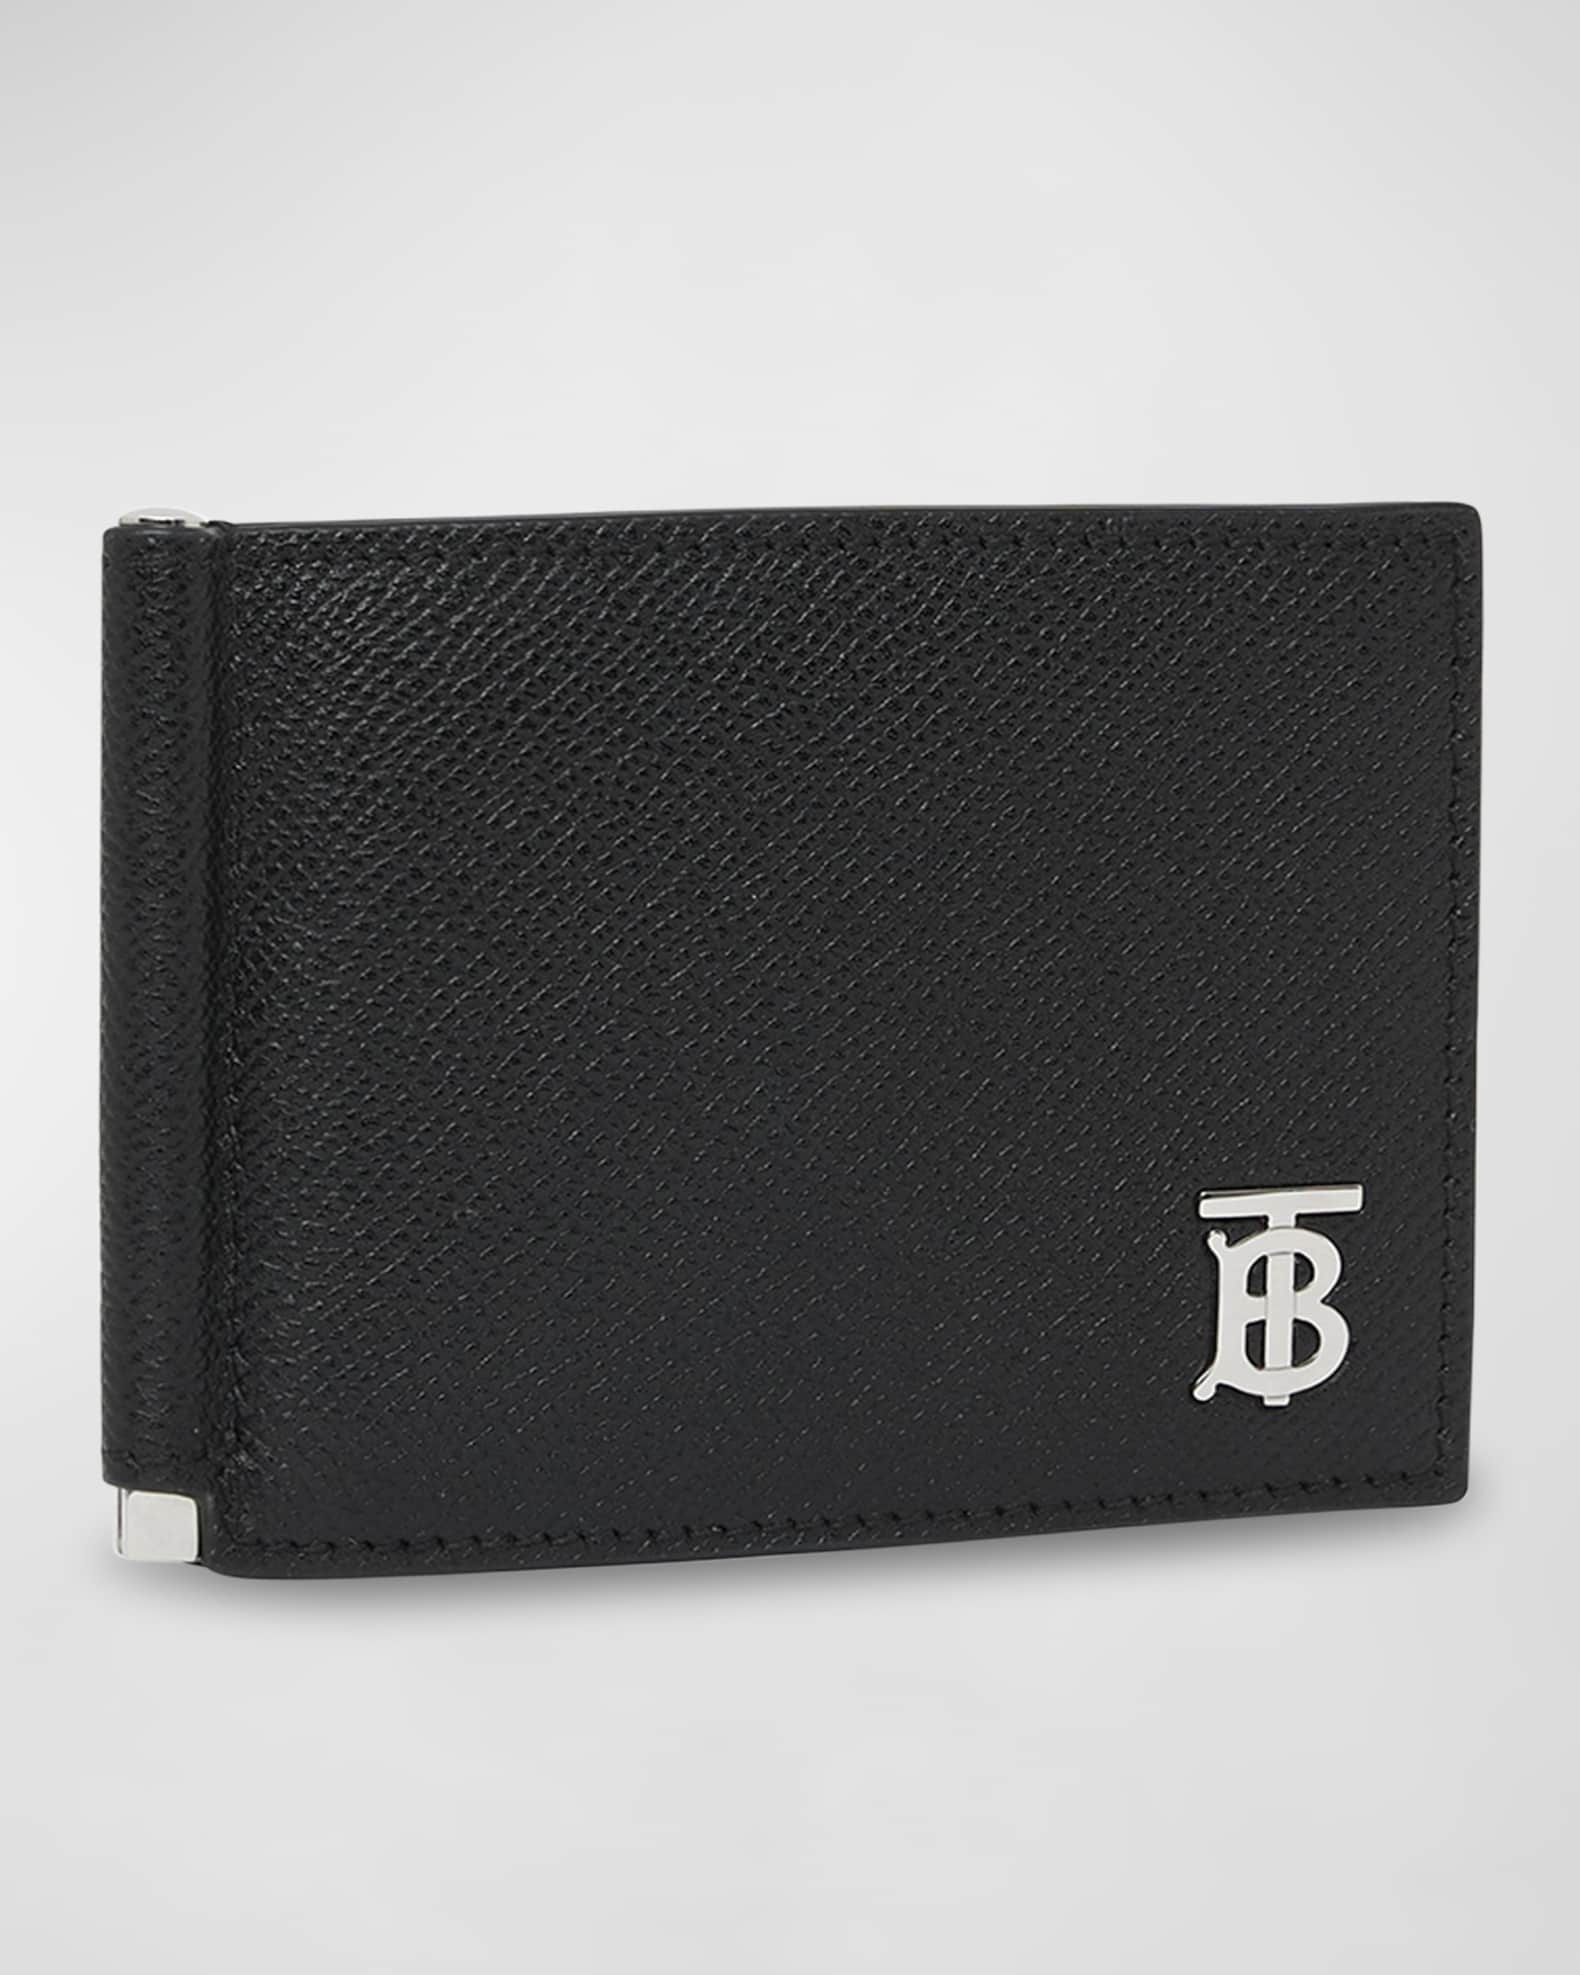 Male Black Designer Leather Wallet